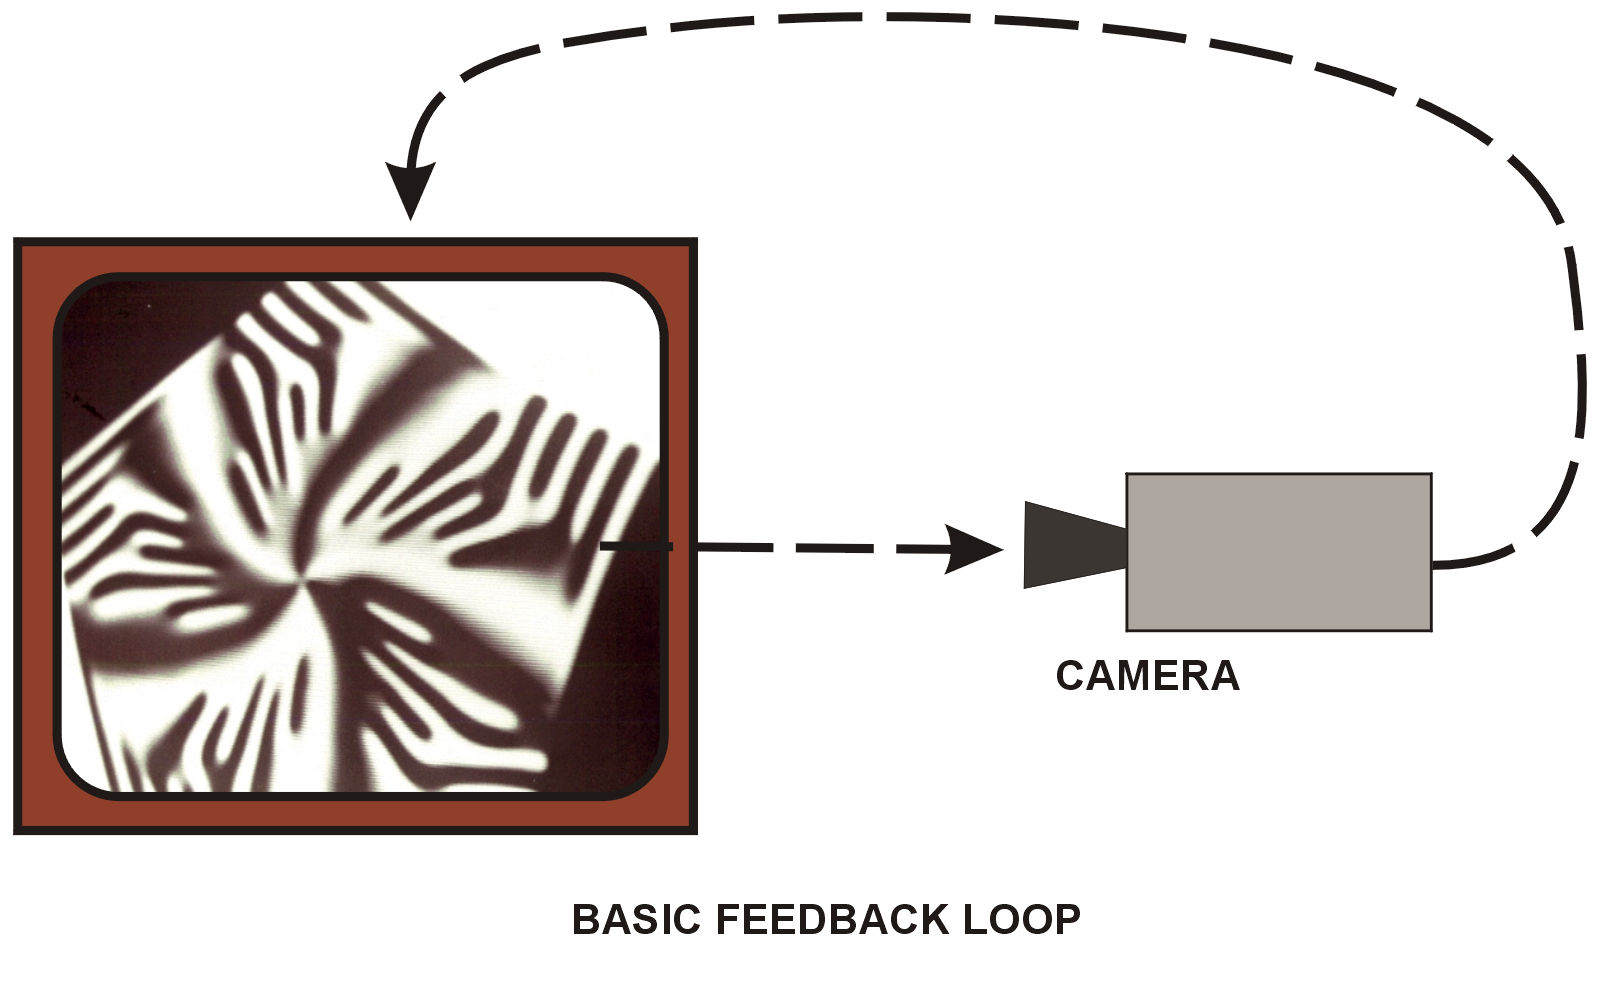 Basic feedback loop